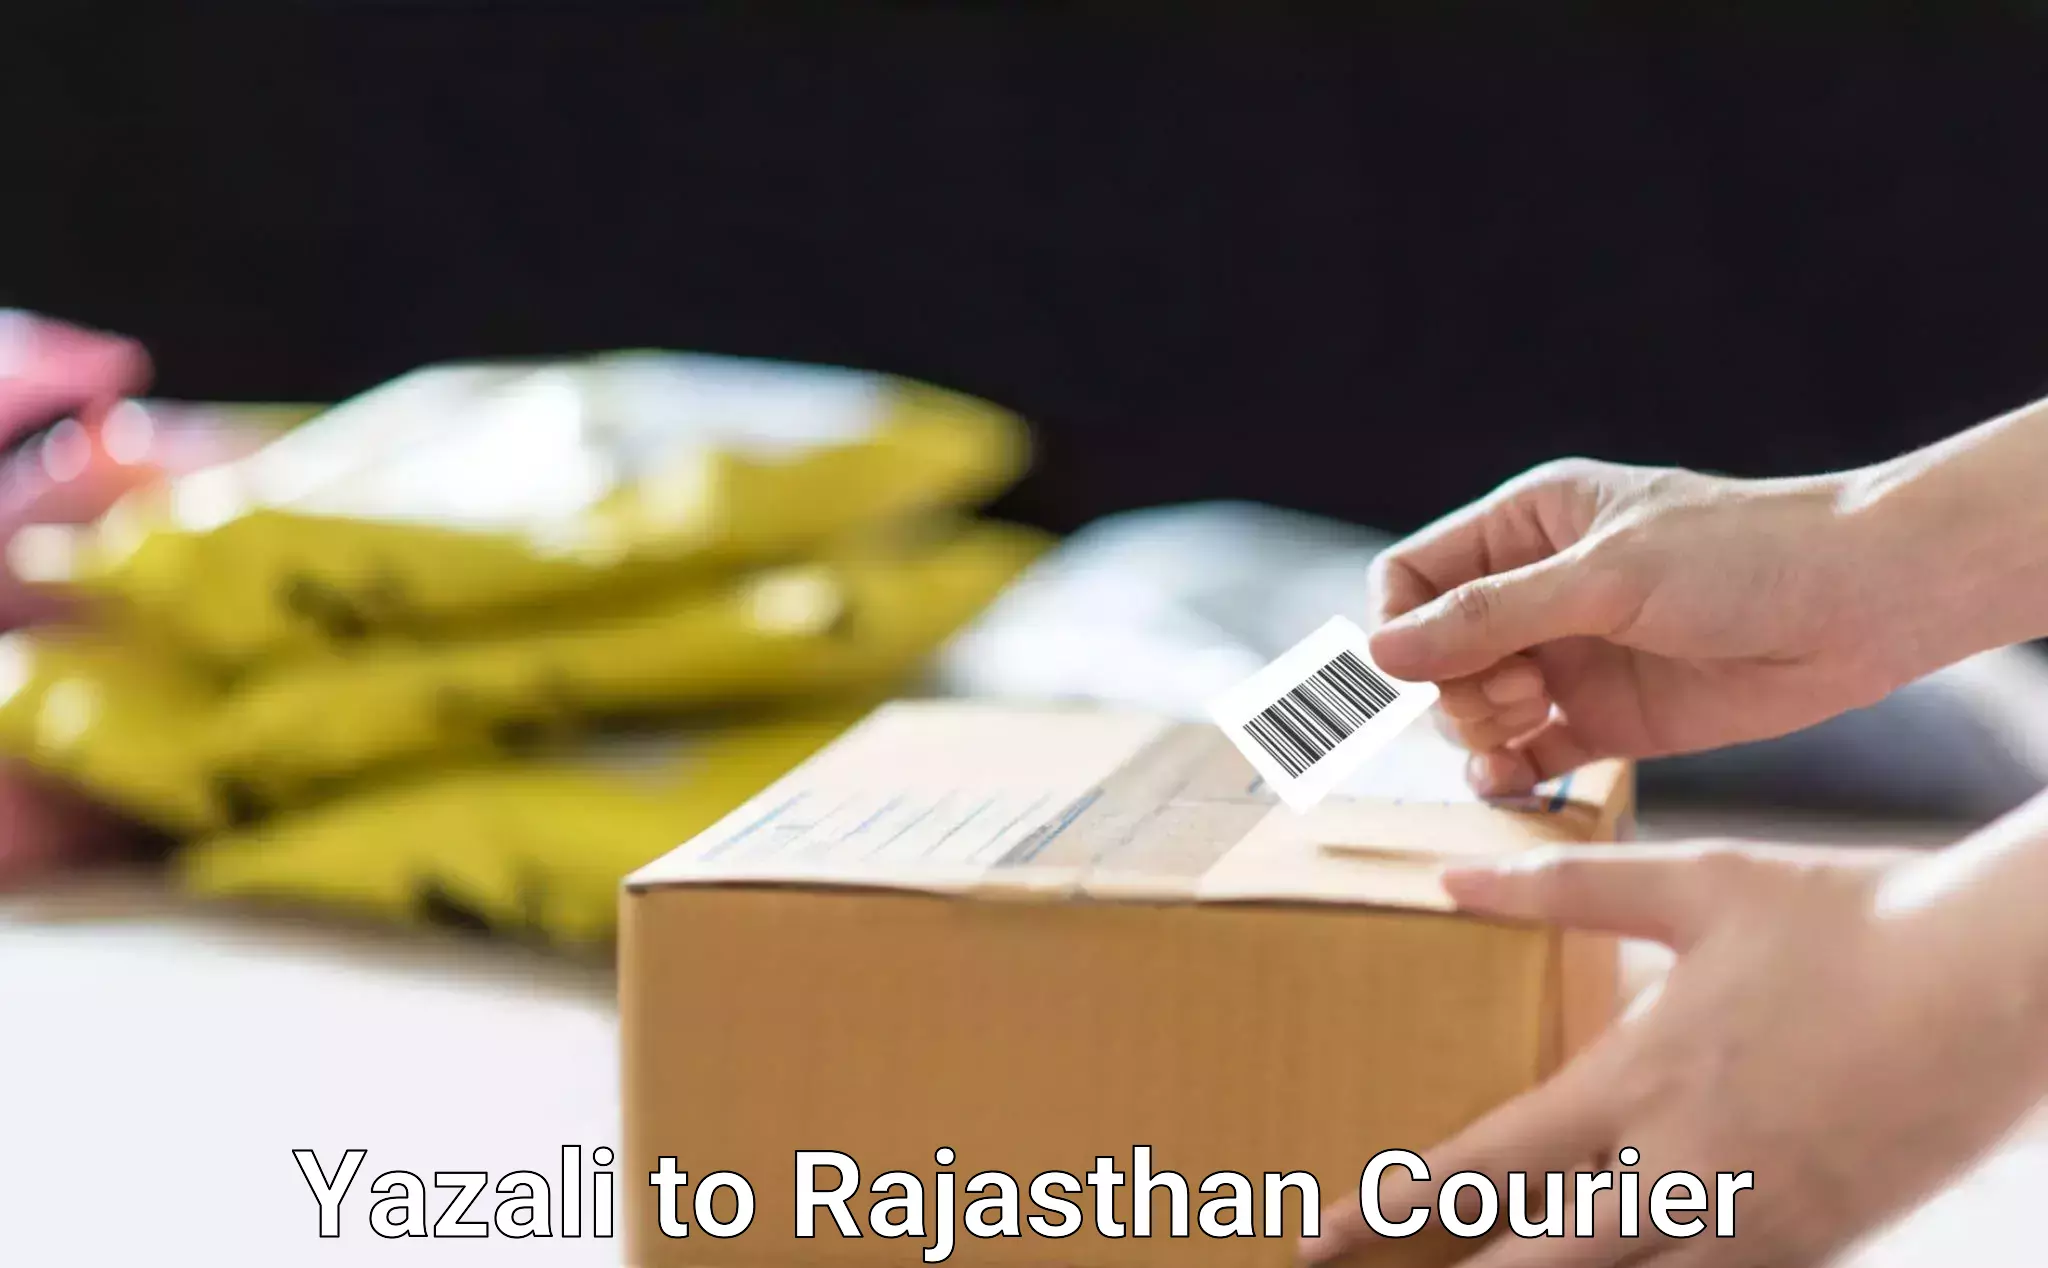 Efficient parcel delivery Yazali to Chittorgarh